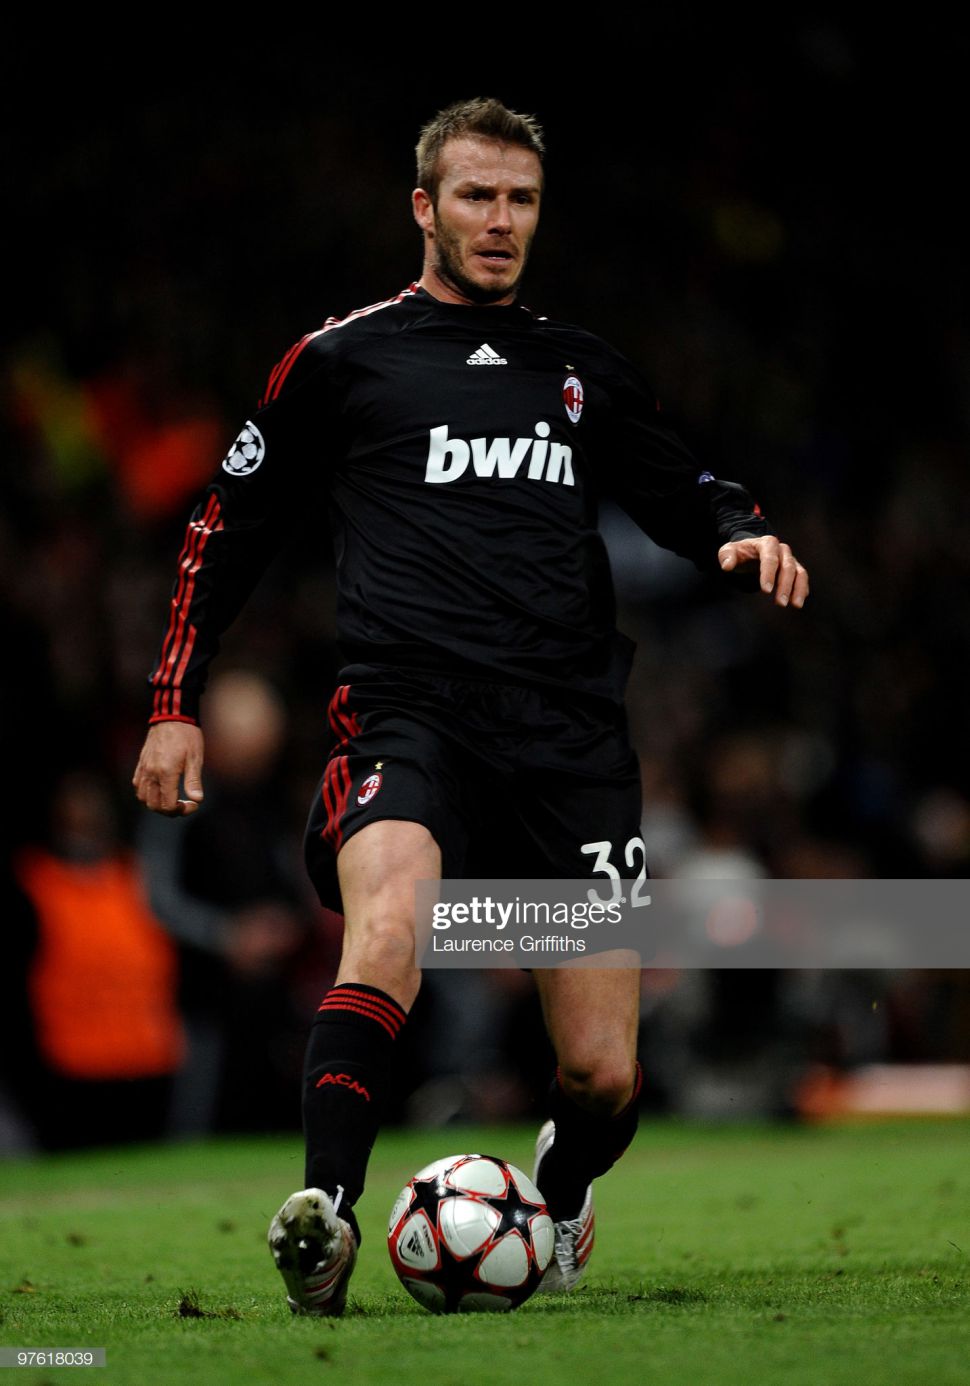 Áo đấu Beckham #32 AC Milan 2009-2010 third shirt jersey black